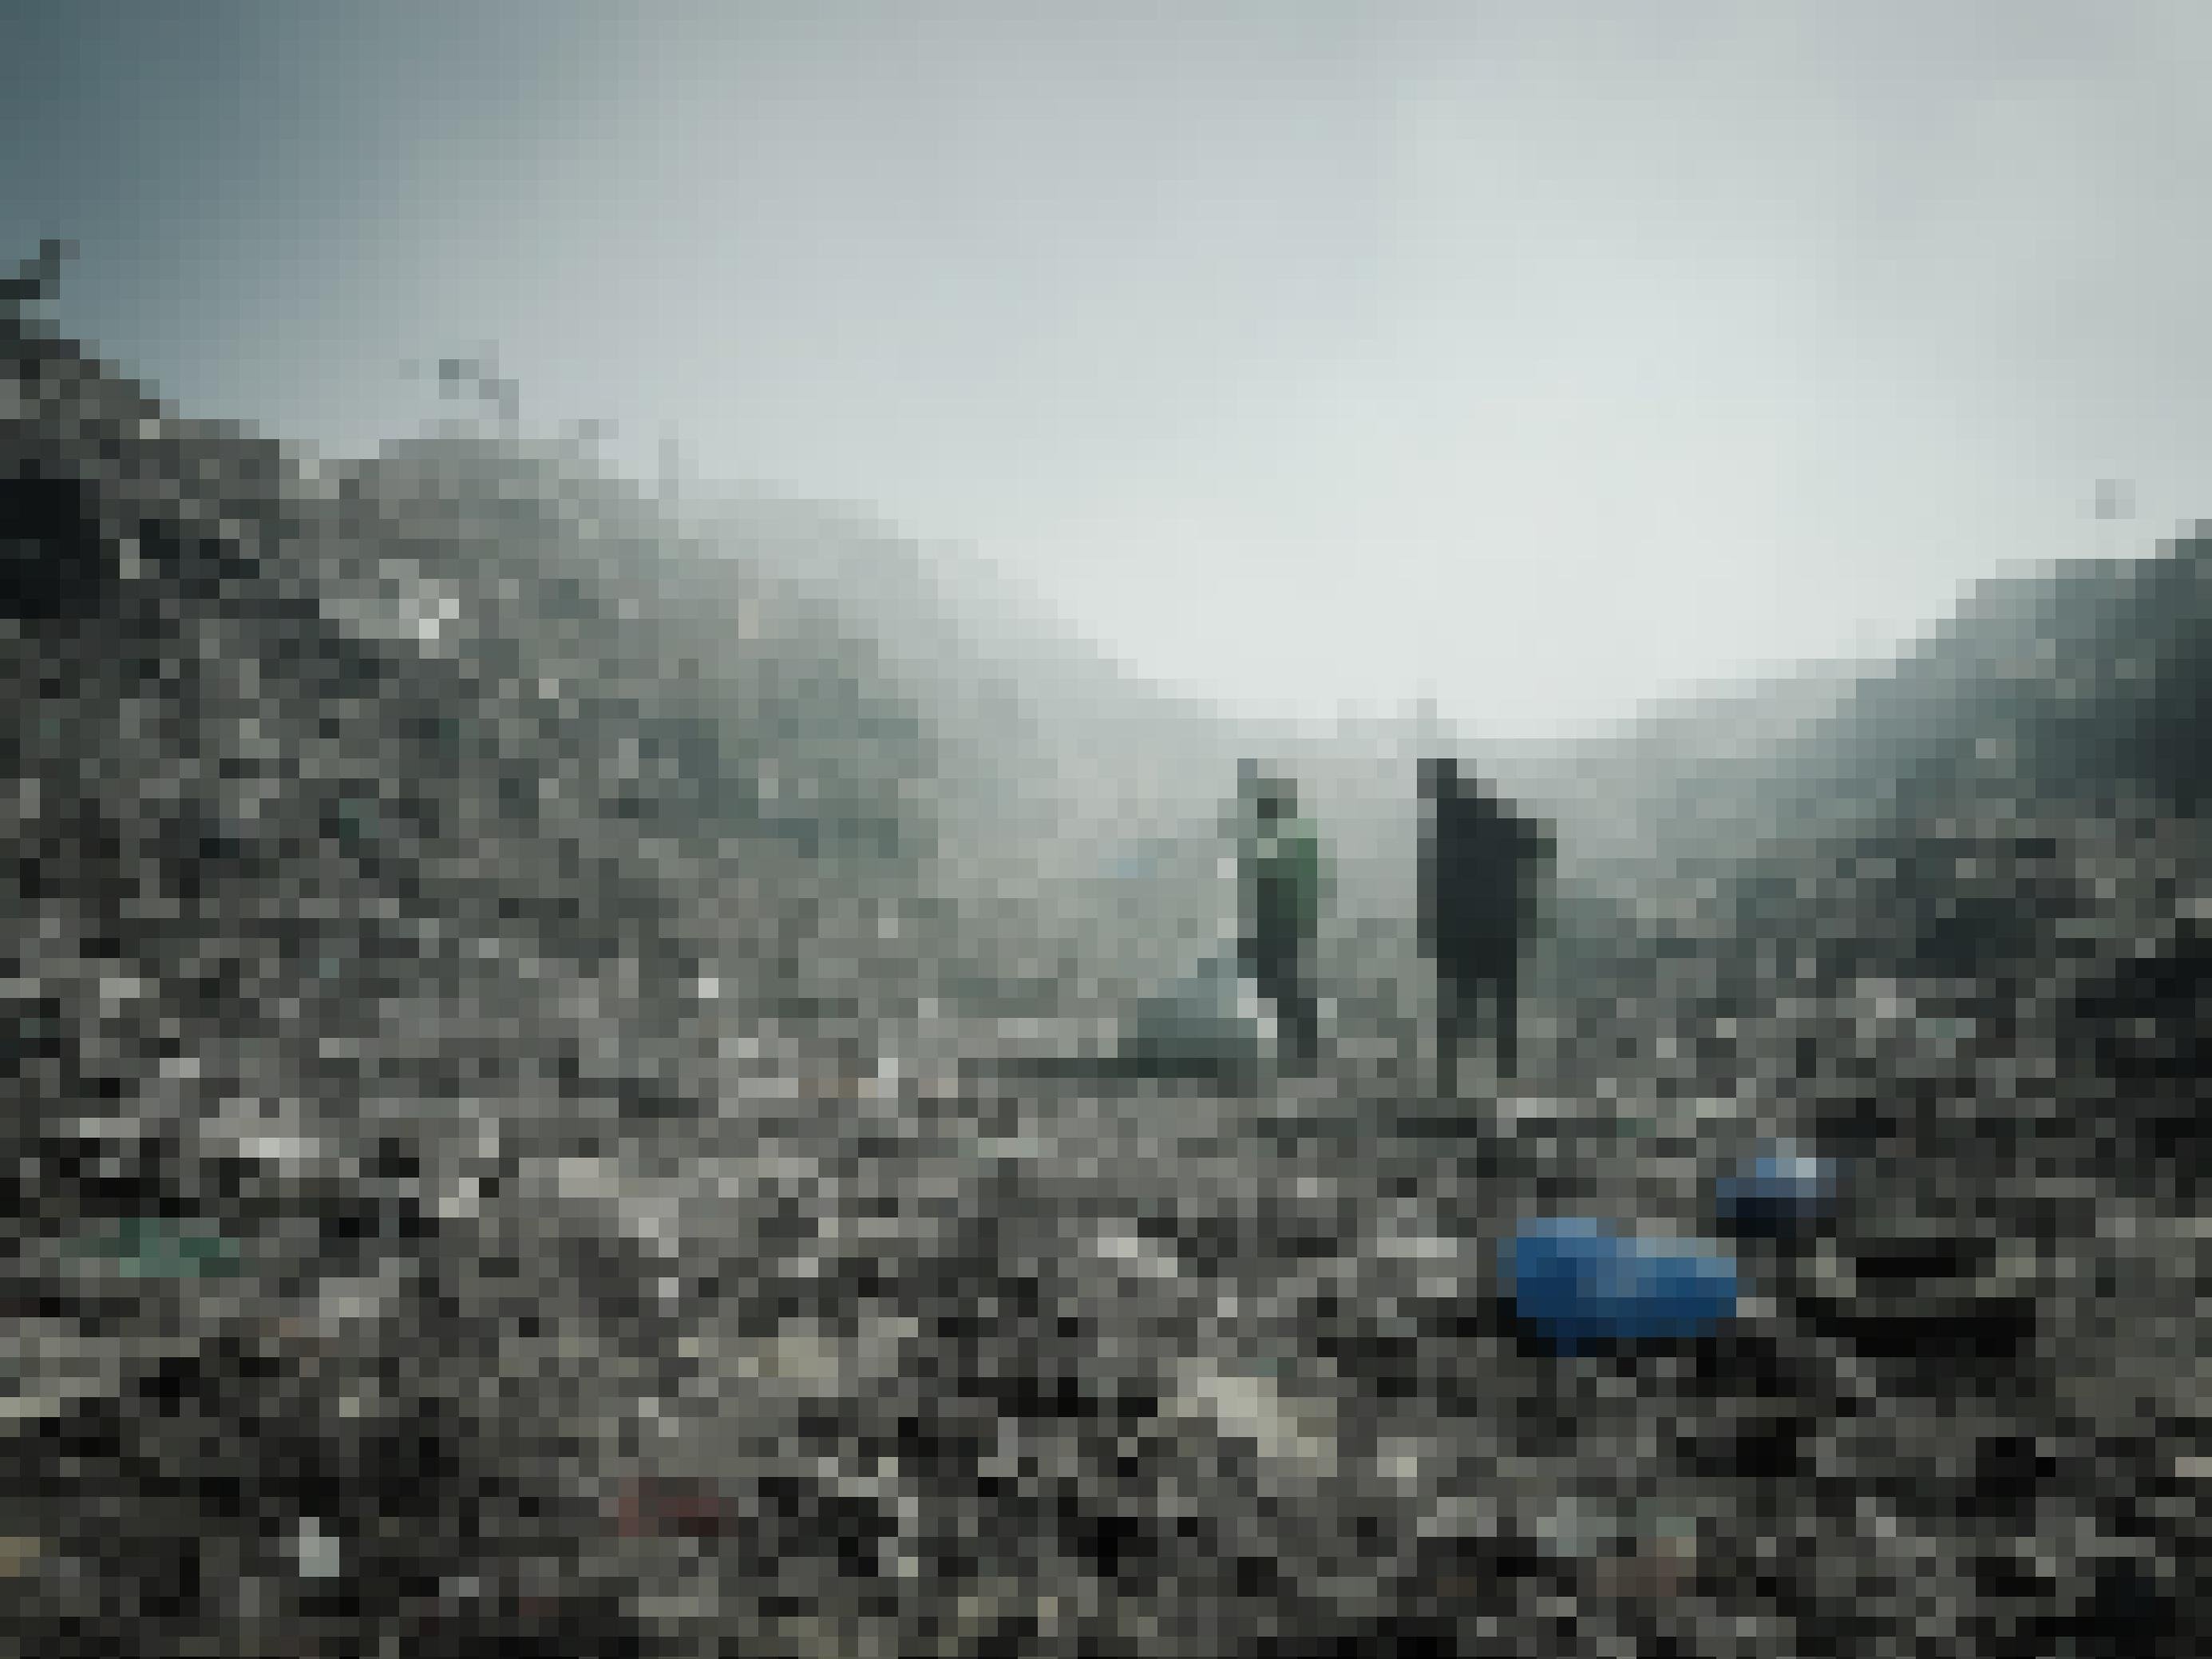 Zwischen hohen Bergen aus Müll zwei Menschen, einer trägt einen Sack, der andere schleift einen Sack hinterher. Die Luft ist von Rauch geschwängert. Auf der Spitze der Müllberge links im Bild sitzen einige Marabout genannte Vögel, es sind Aasfresser.